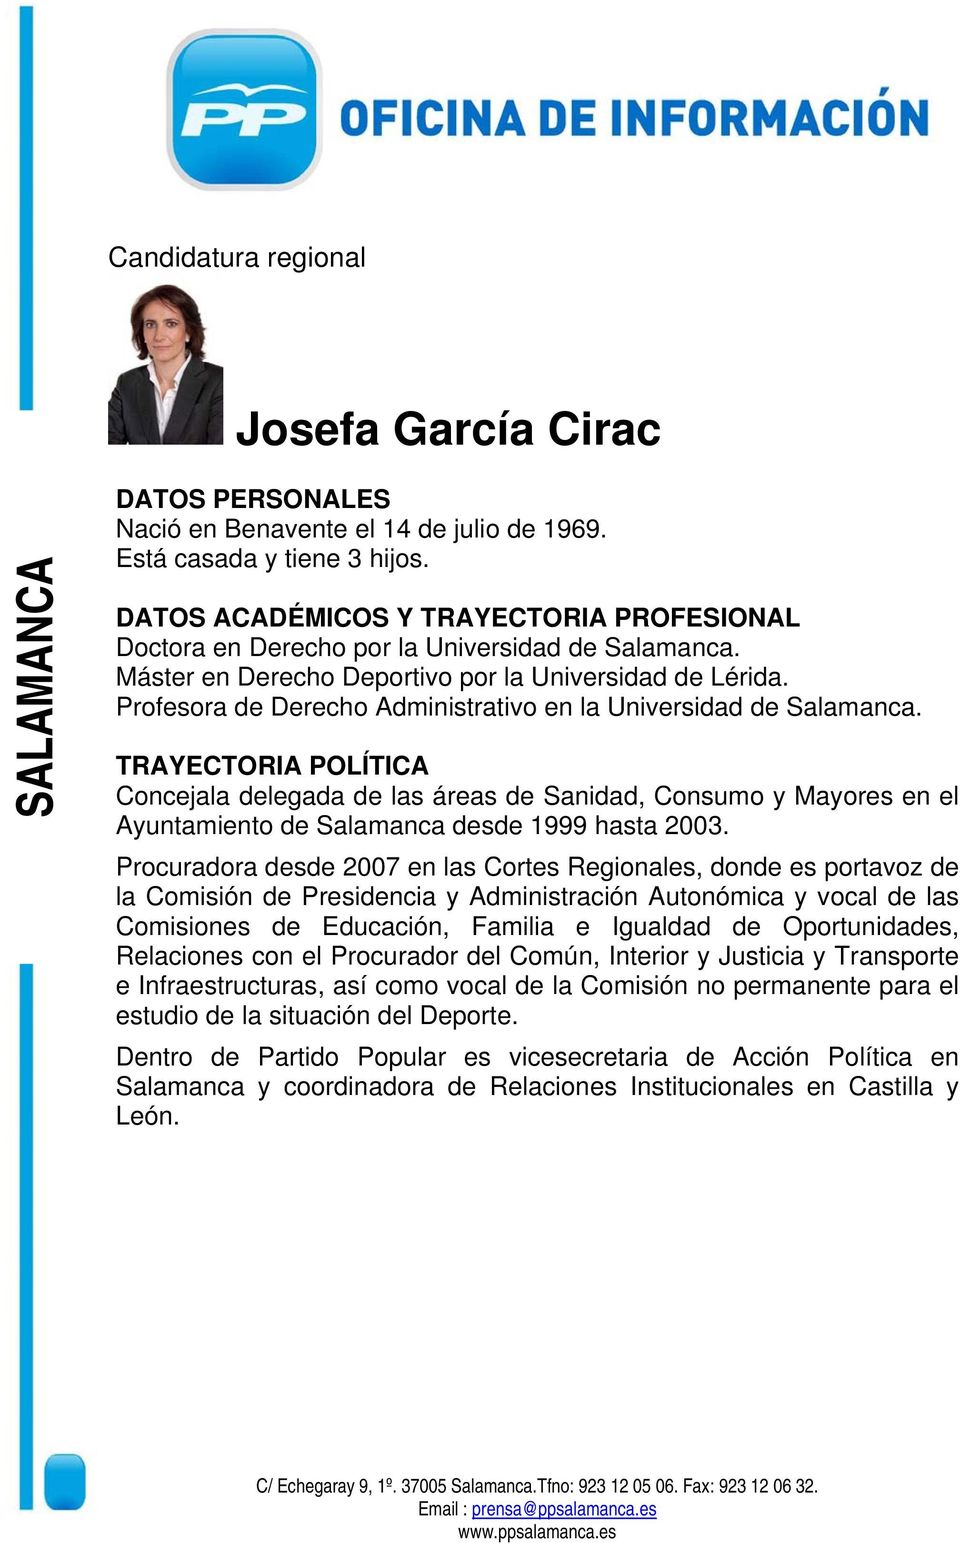 Concejala delegada de las áreas de Sanidad, Consumo y Mayores en el Ayuntamiento de Salamanca desde 1999 hasta 2003.